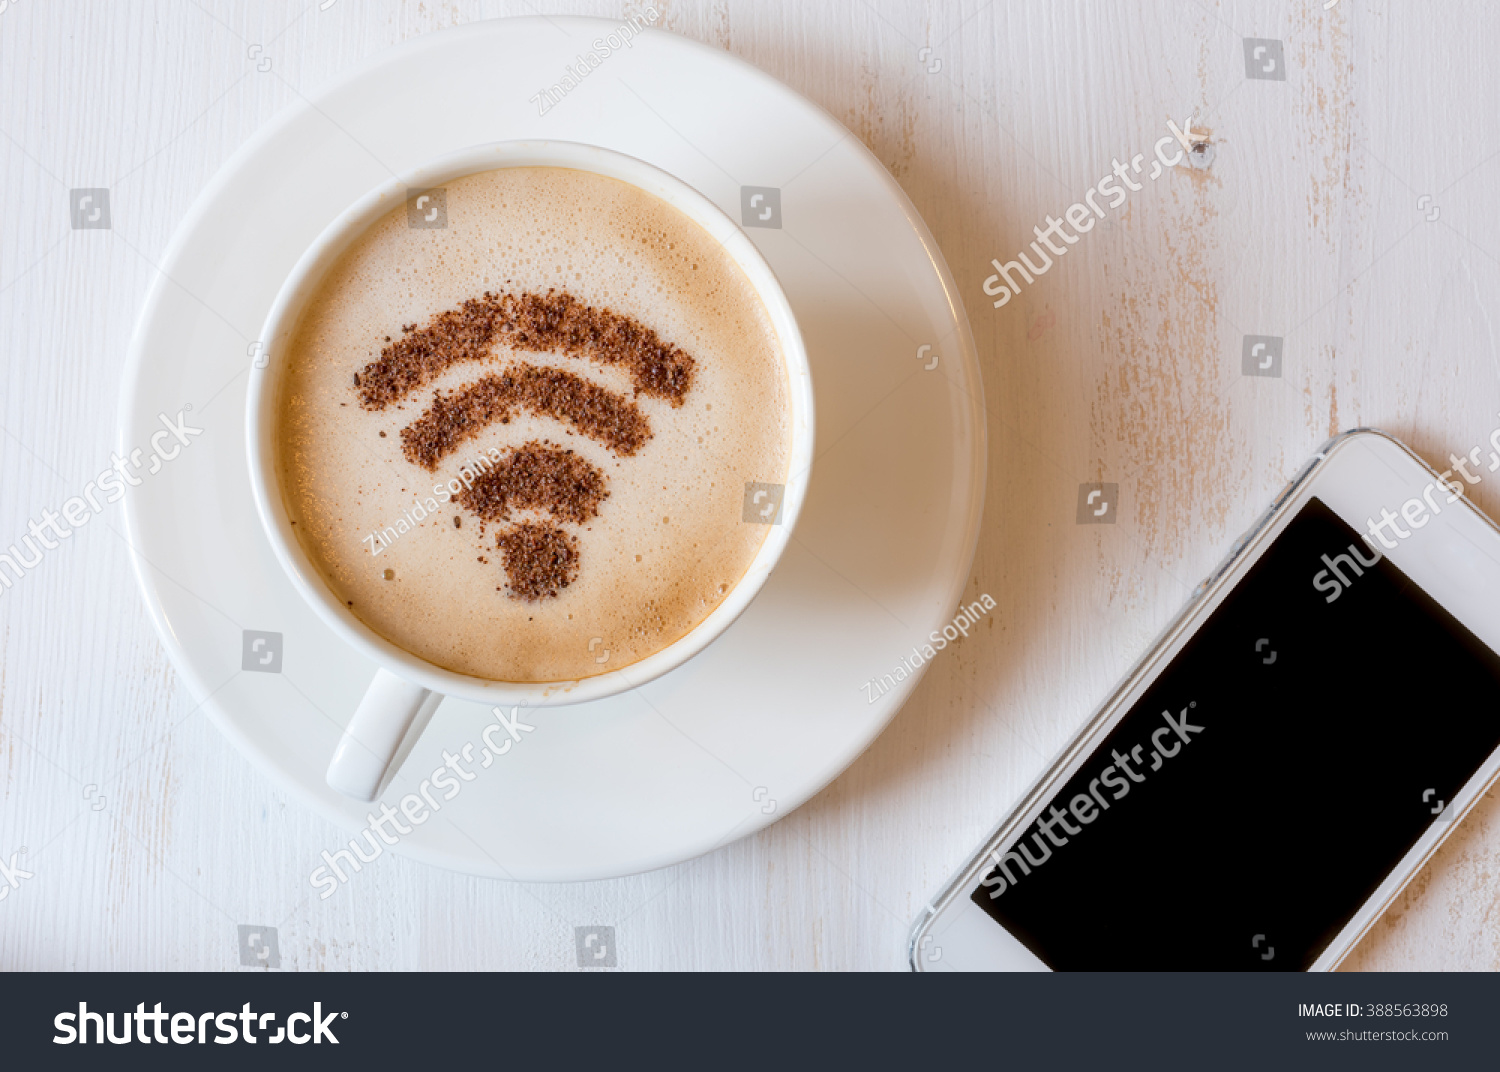 カプチーノのコーヒーデコレーションとして シナモンで作られたwifiシンボル の写真素材 今すぐ編集